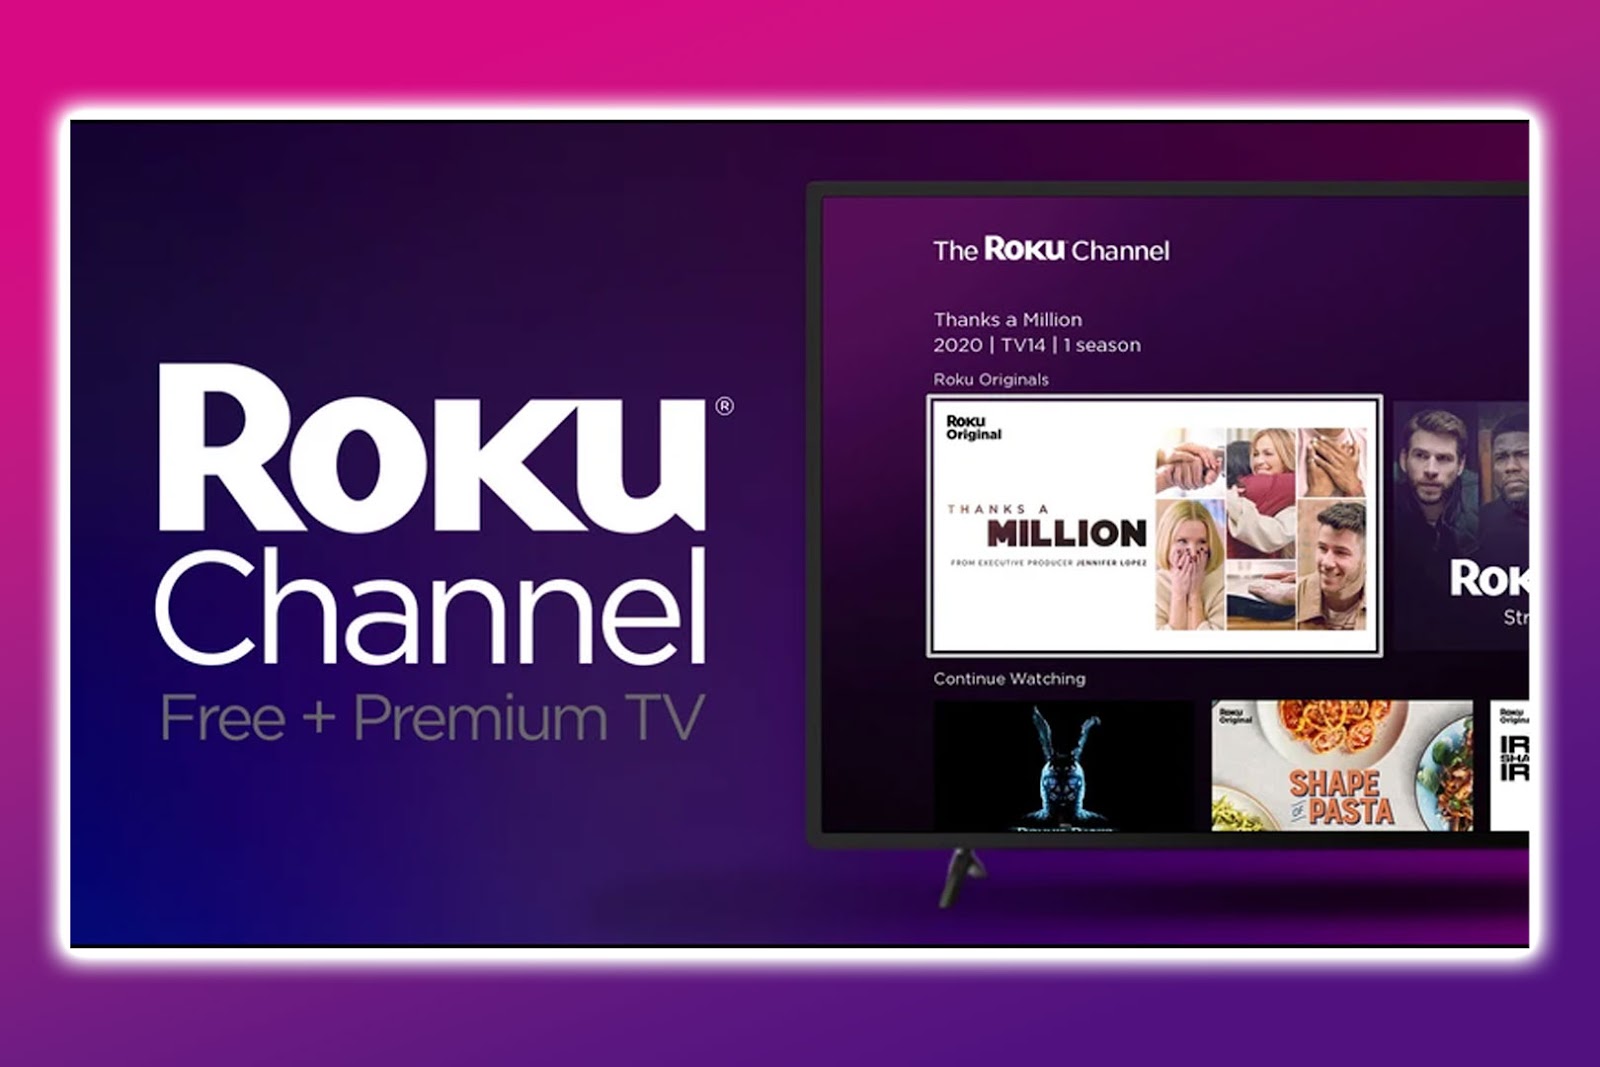 Apollo TV Alternative - The Roku Channel